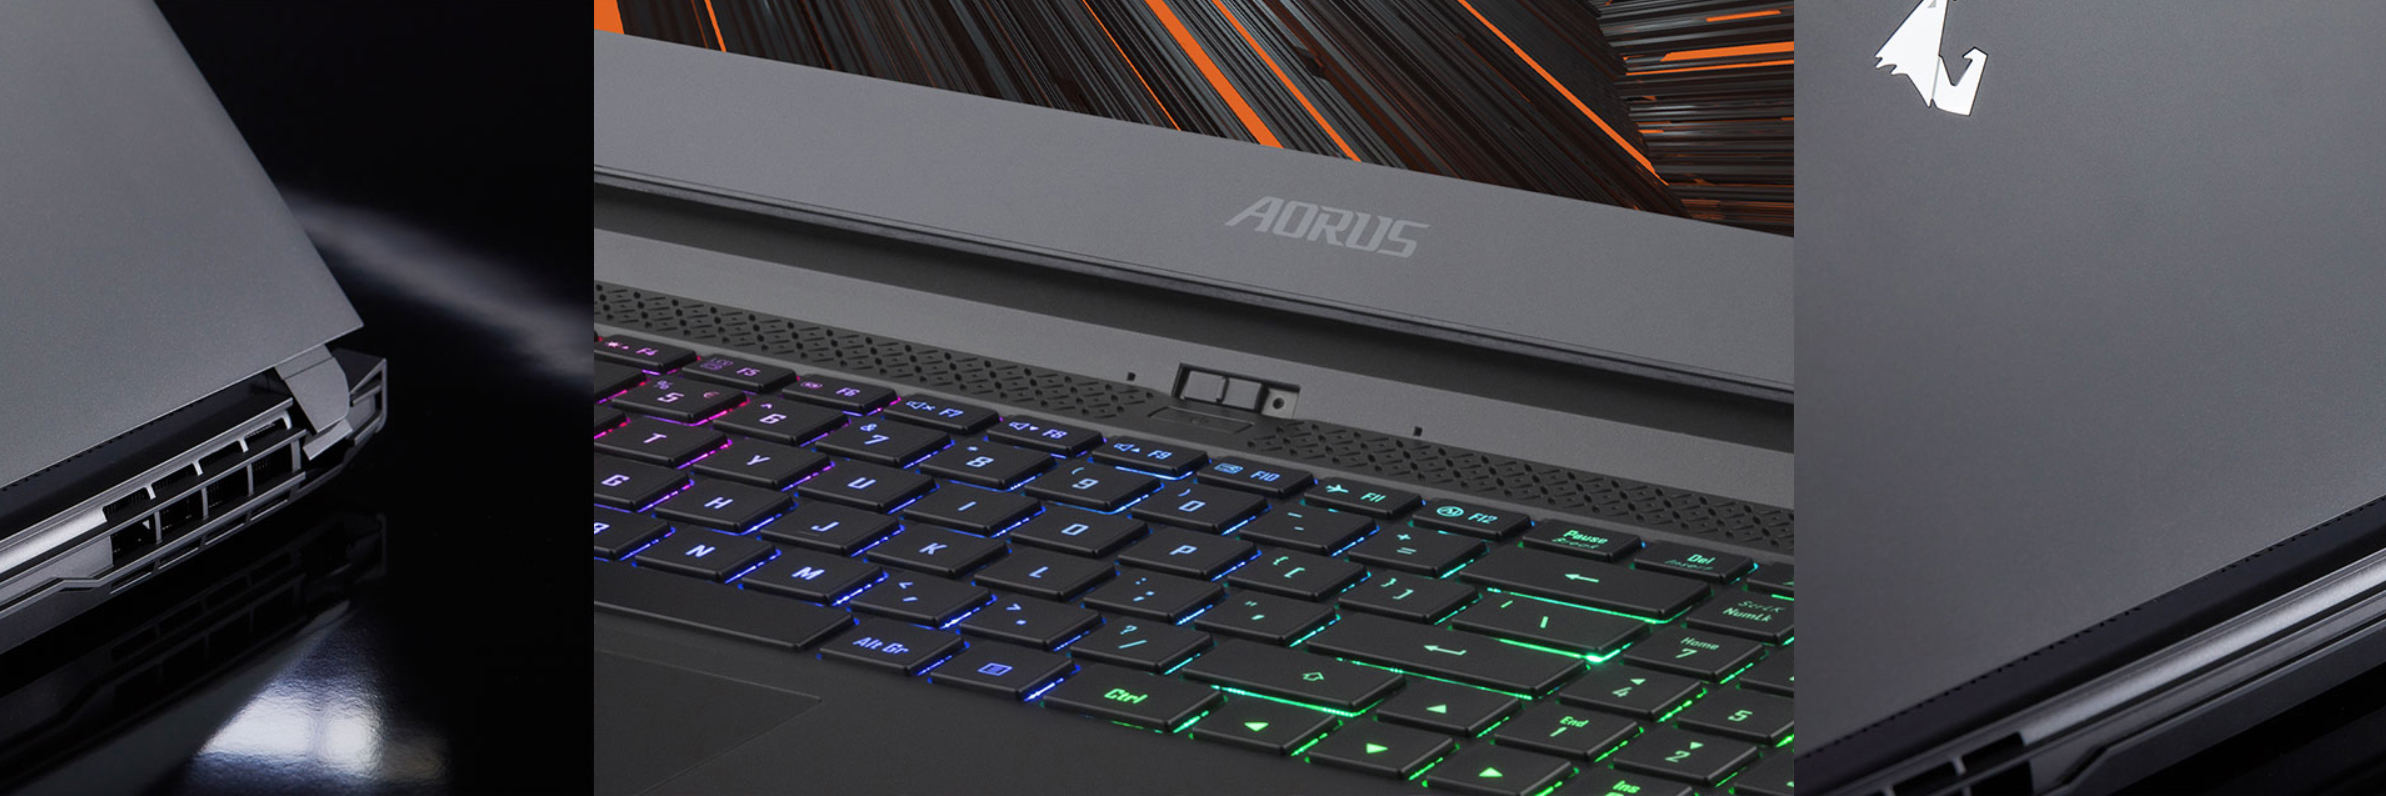 Aorus Gaming Laptop